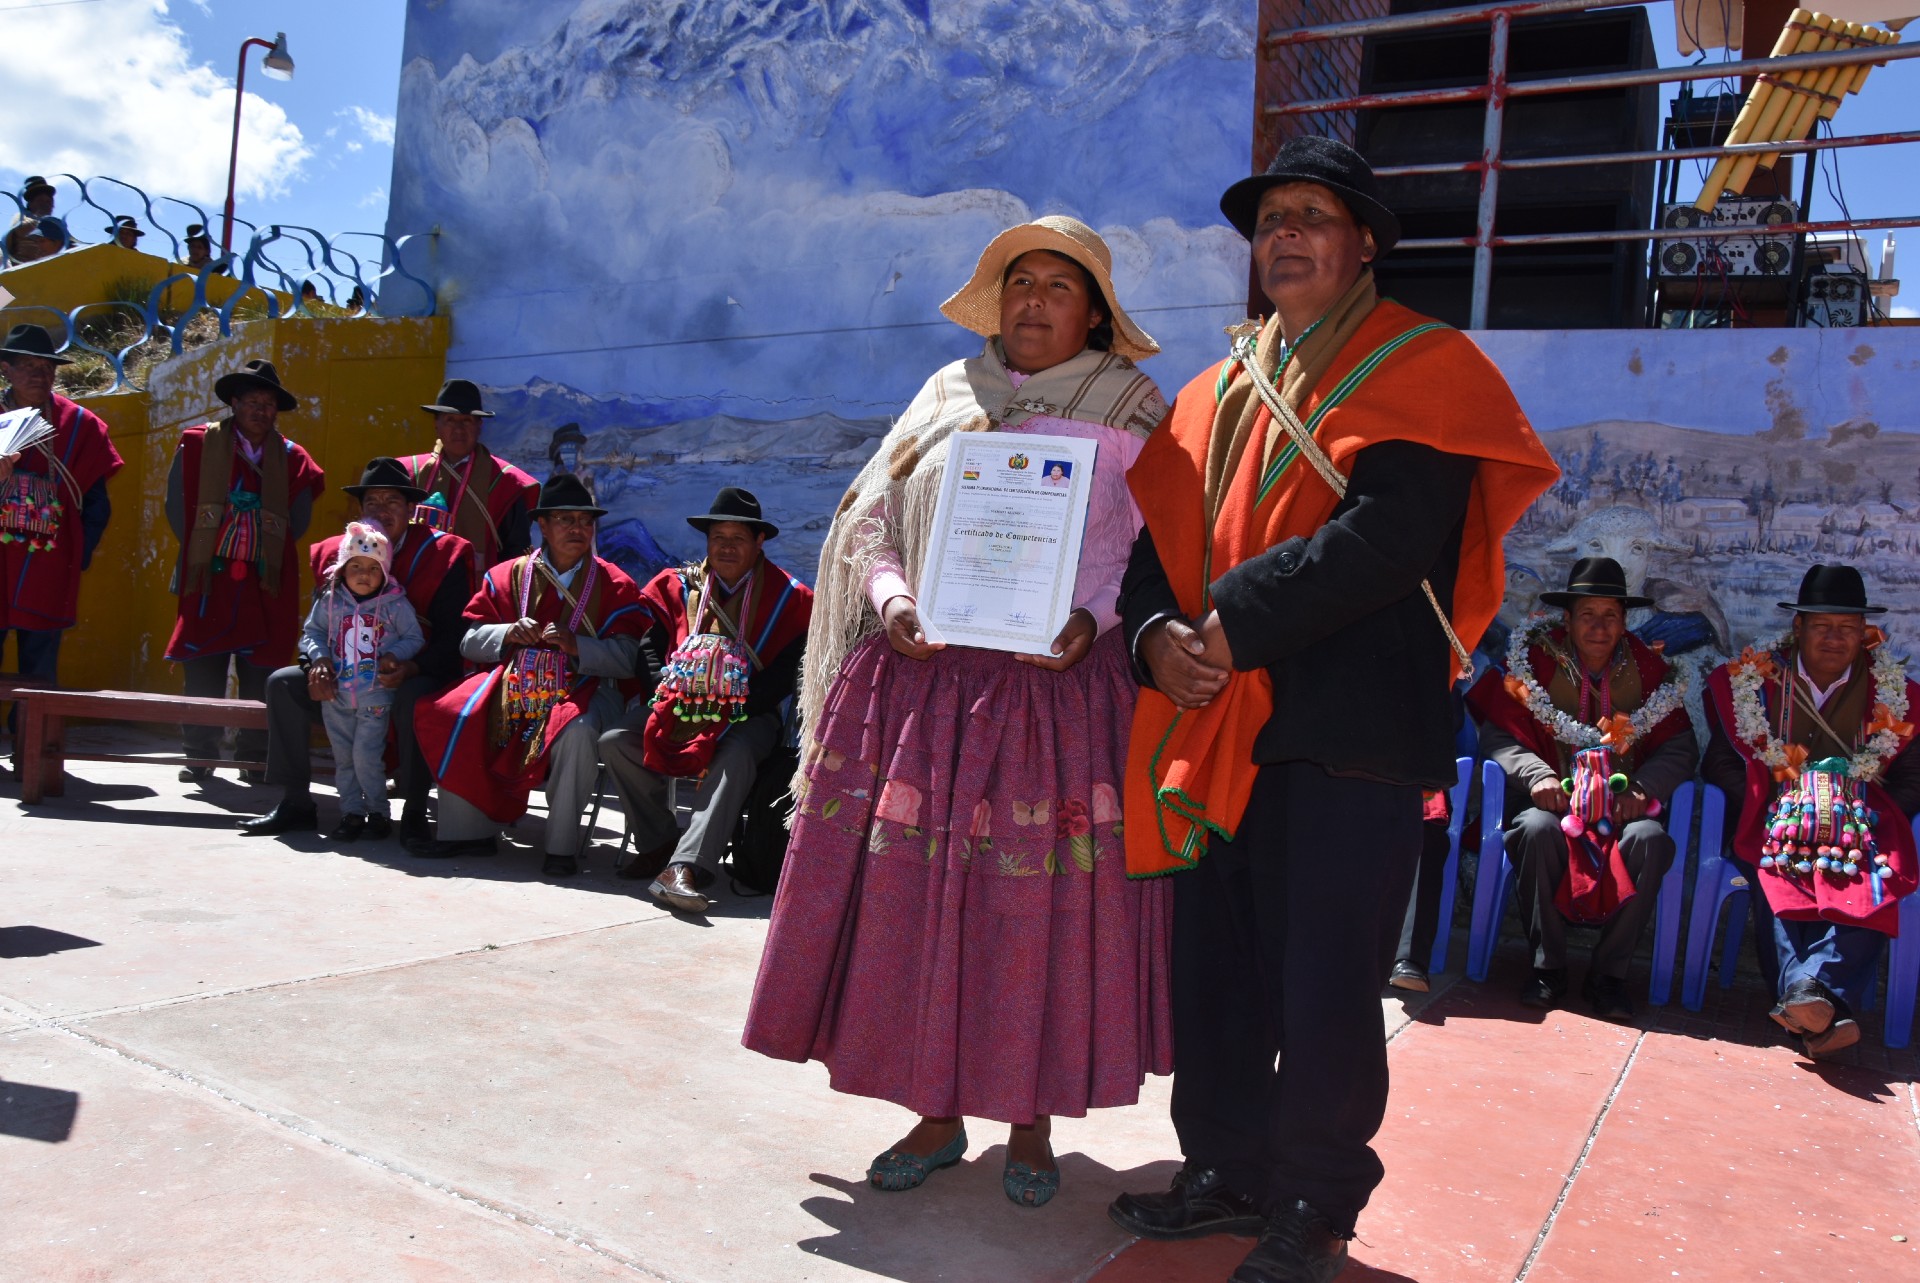  صورة التقطها روث كيسبي ماماني في ١٣ أغسطس-أب،٢٠٢١ في والاتا تشيكو، بوليفيا، من خلال حفل تصديق شهادة منحت لإلياس هيلاري ماماني، وهي مقيمة في ولاتا ومن المواطنين الأصليين . وتم نشر الصورة بموجب ترخيص.